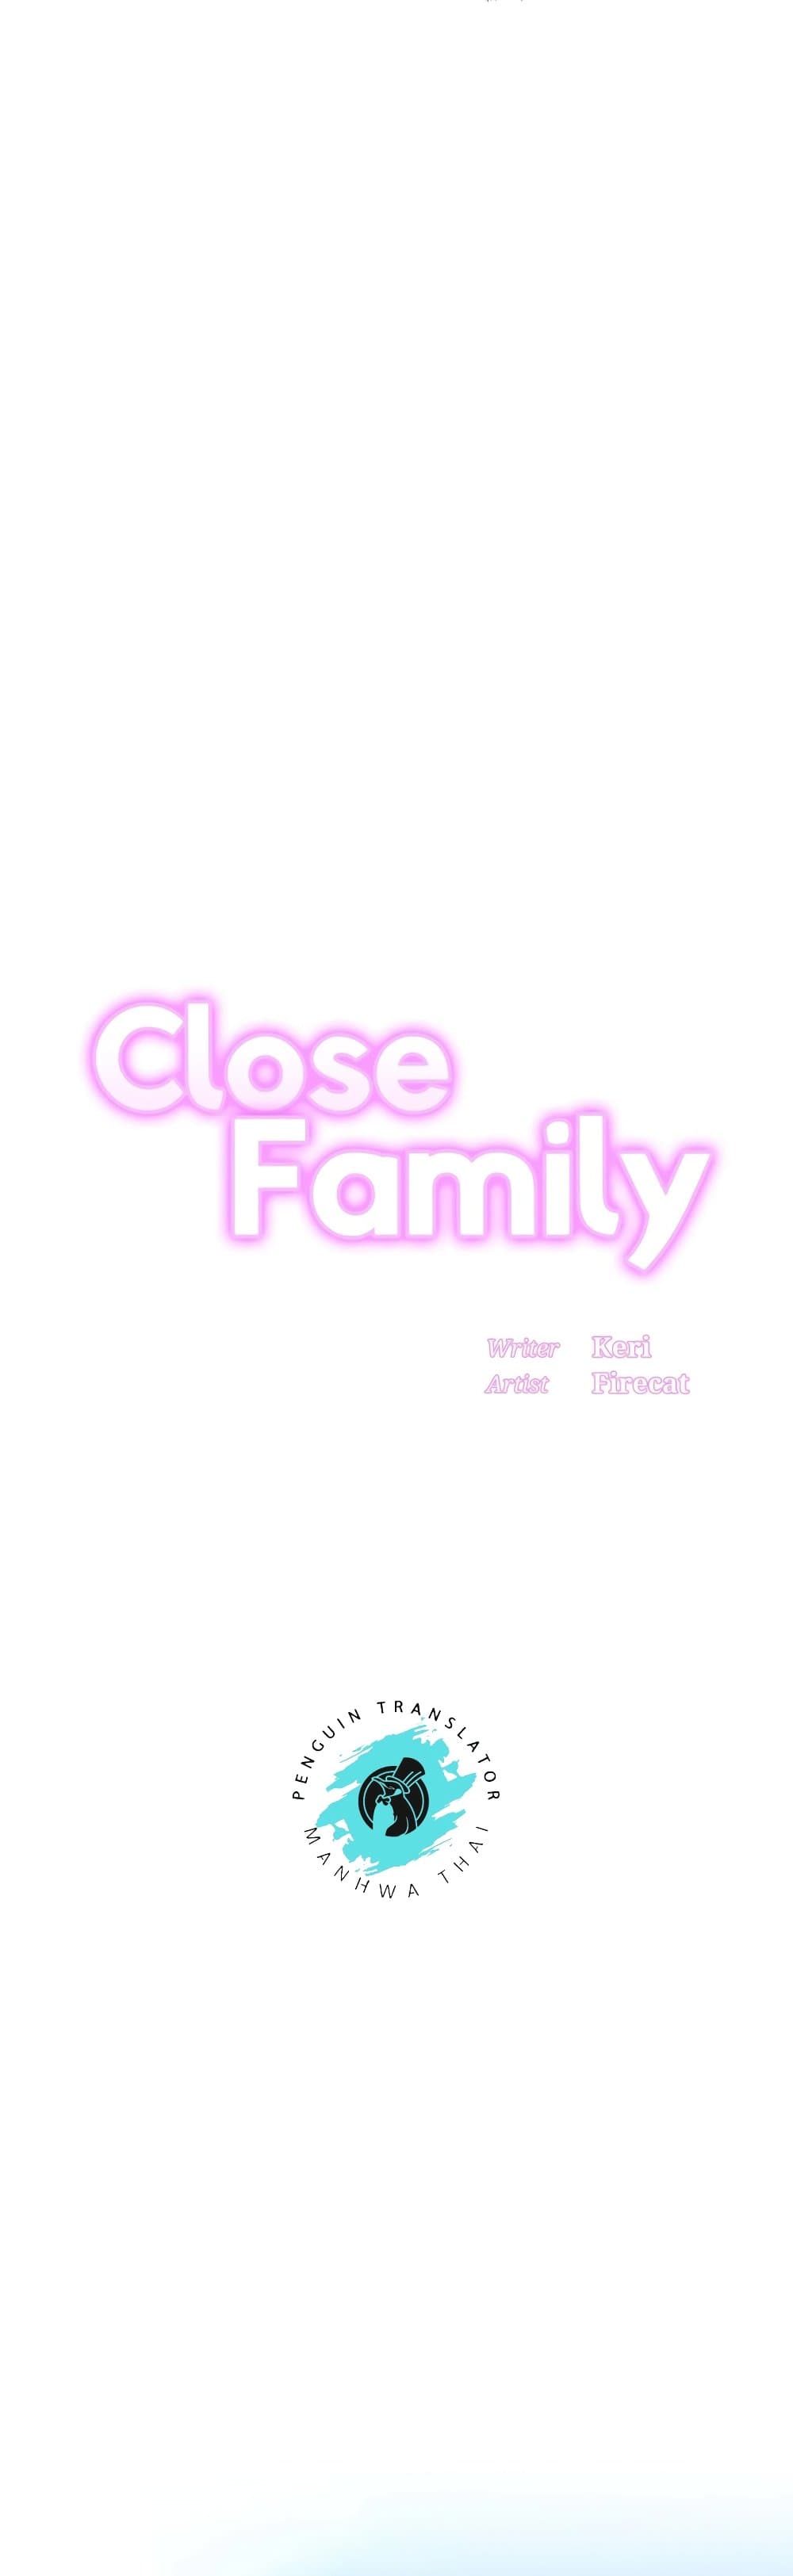 Close Family 47-47